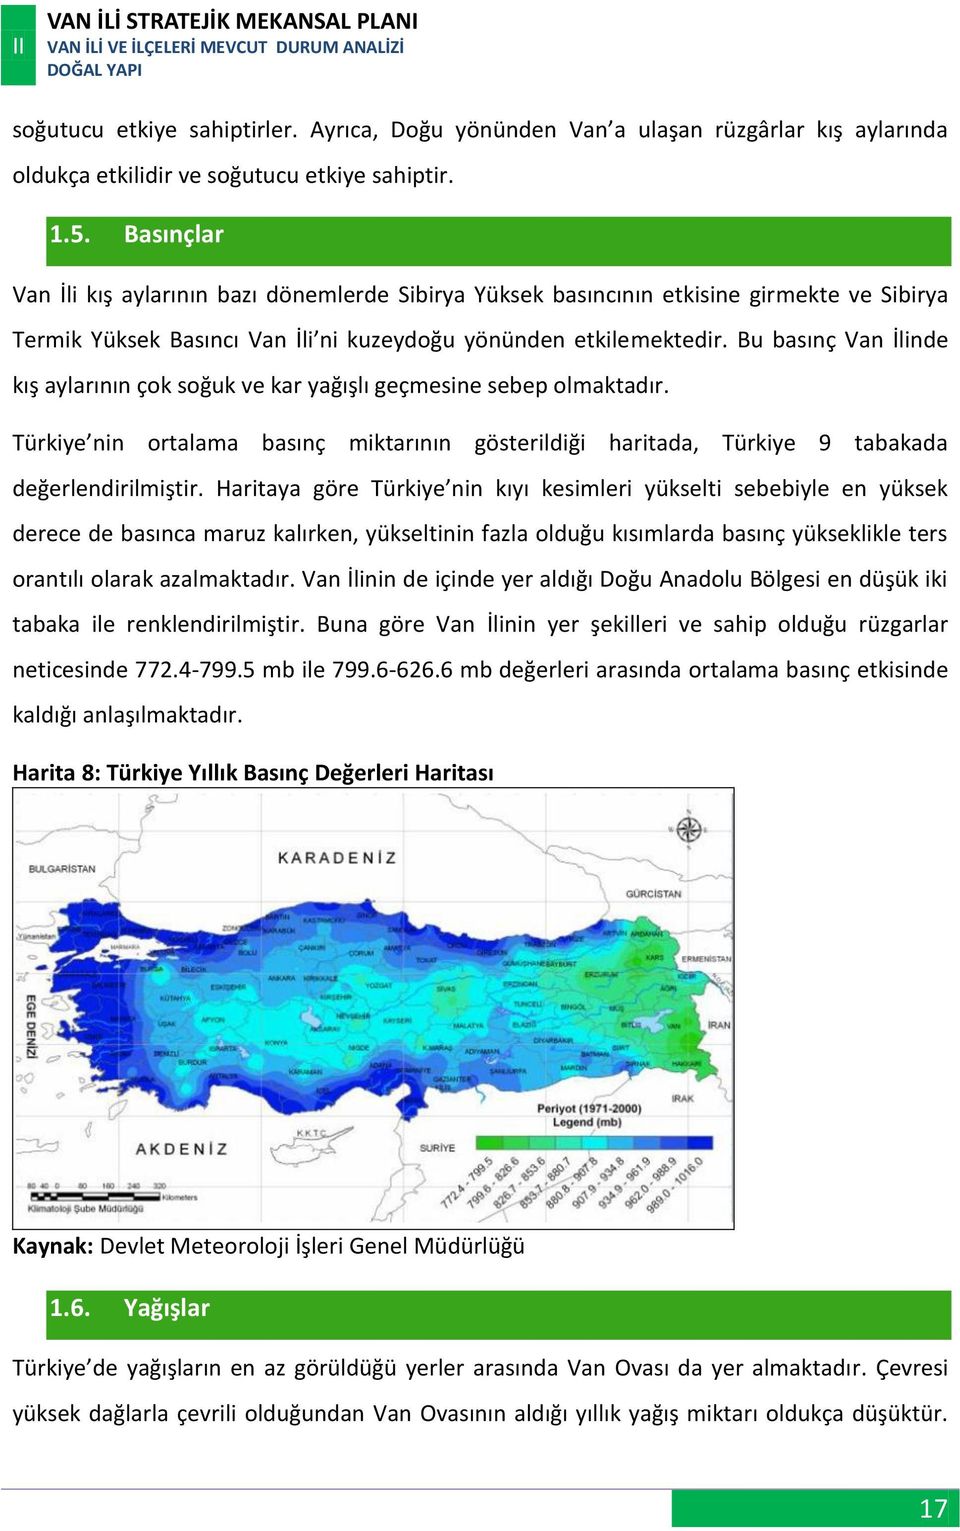 Bu basınç Van İlinde kış aylarının çok soğuk ve kar yağışlı geçmesine sebep olmaktadır. Türkiye nin ortalama basınç miktarının gösterildiği haritada, Türkiye 9 tabakada değerlendirilmiştir.